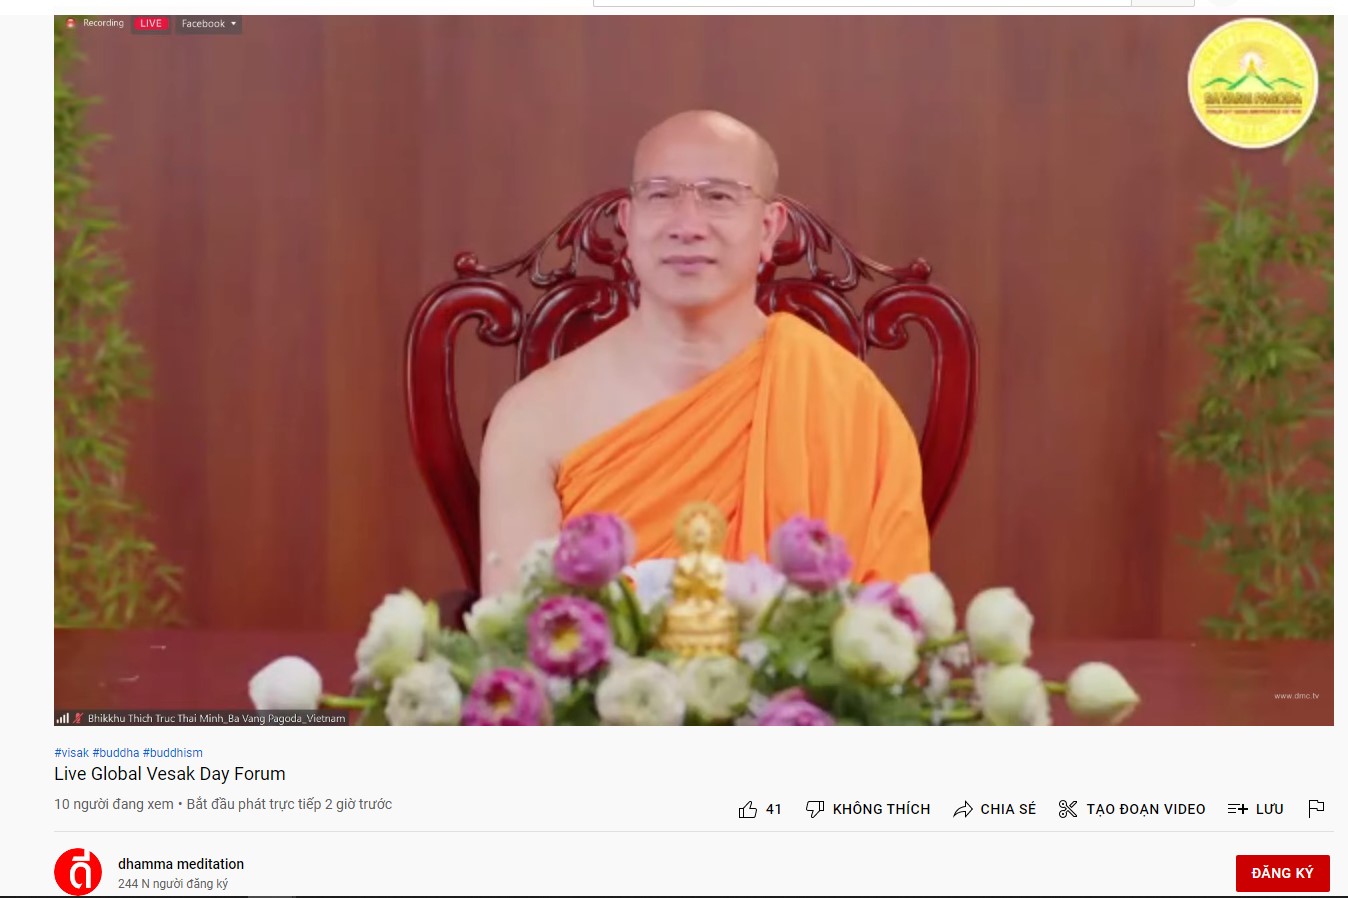 Thầy Thích Trúc Thái Minh là khách mời tham dự chương trình Live Global Vesak Day Forum - Diễn đàn Vesak toàn cầu của chùa Dhammakaya - Thái Lan